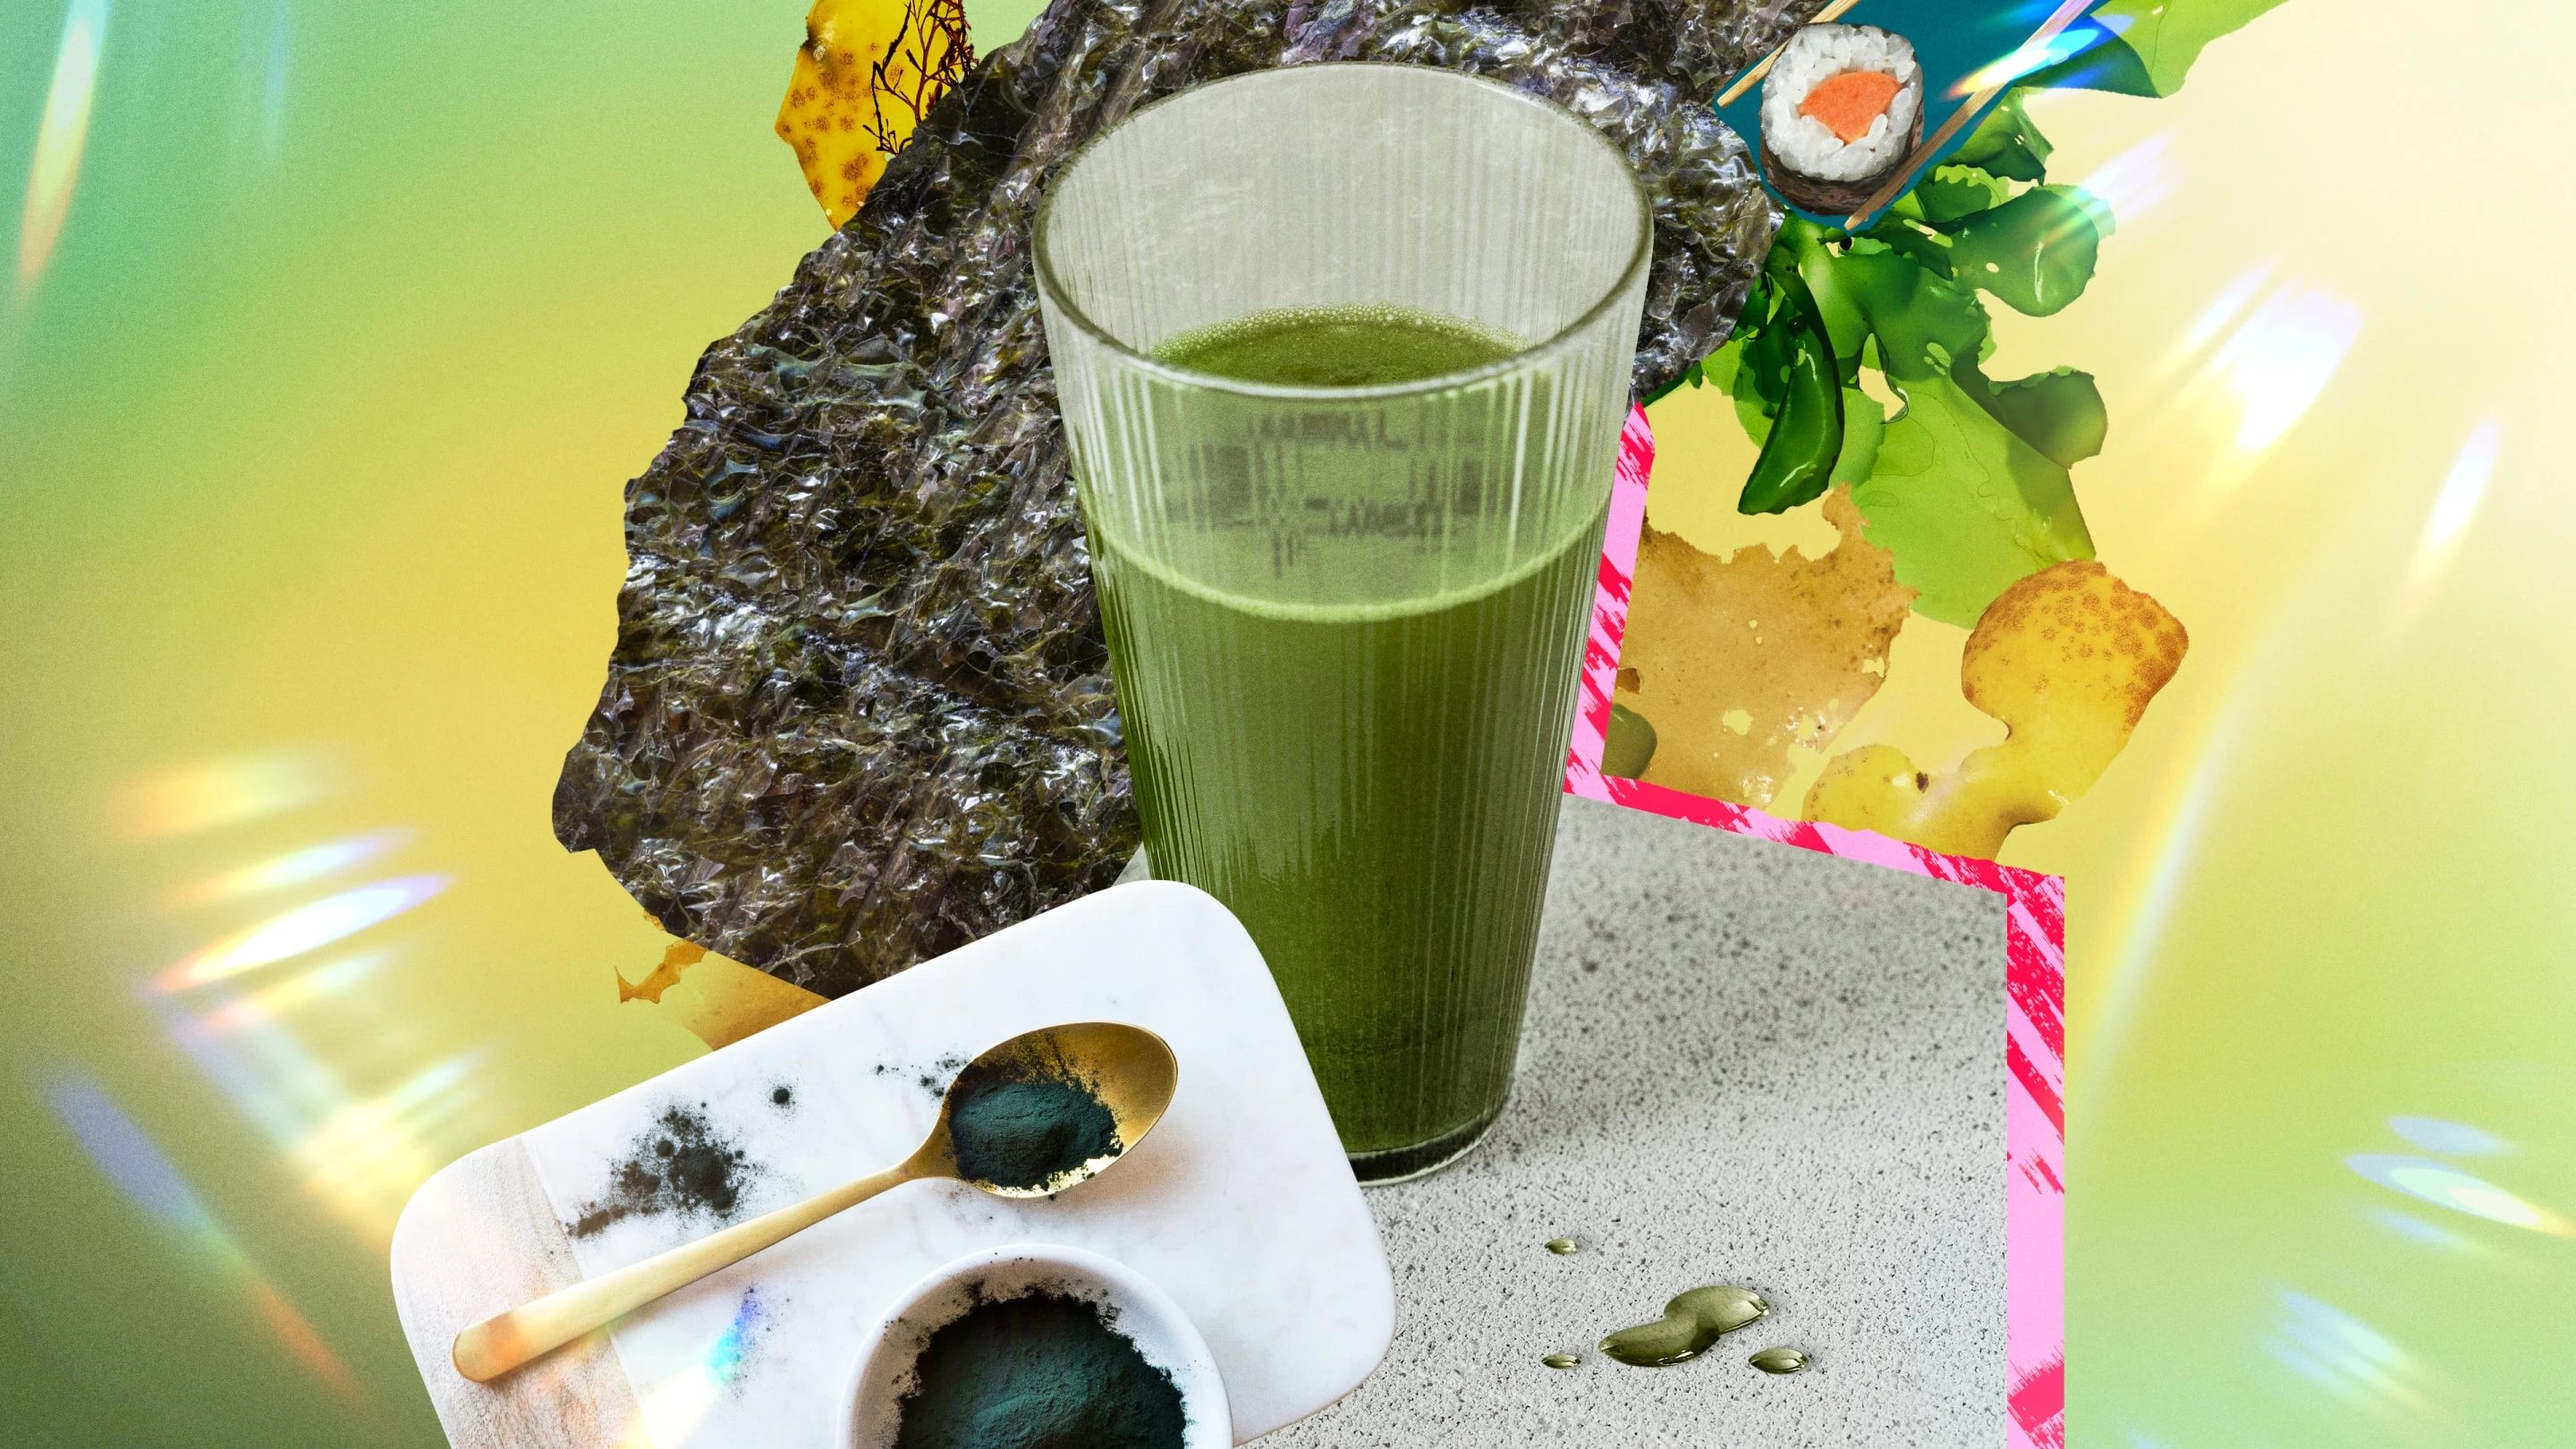 グラスに入った青汁を中心に置き、寿司、海藻の粉末、箸、海苔など、海藻に関連したアイテムをまわりに配したコラージュ。